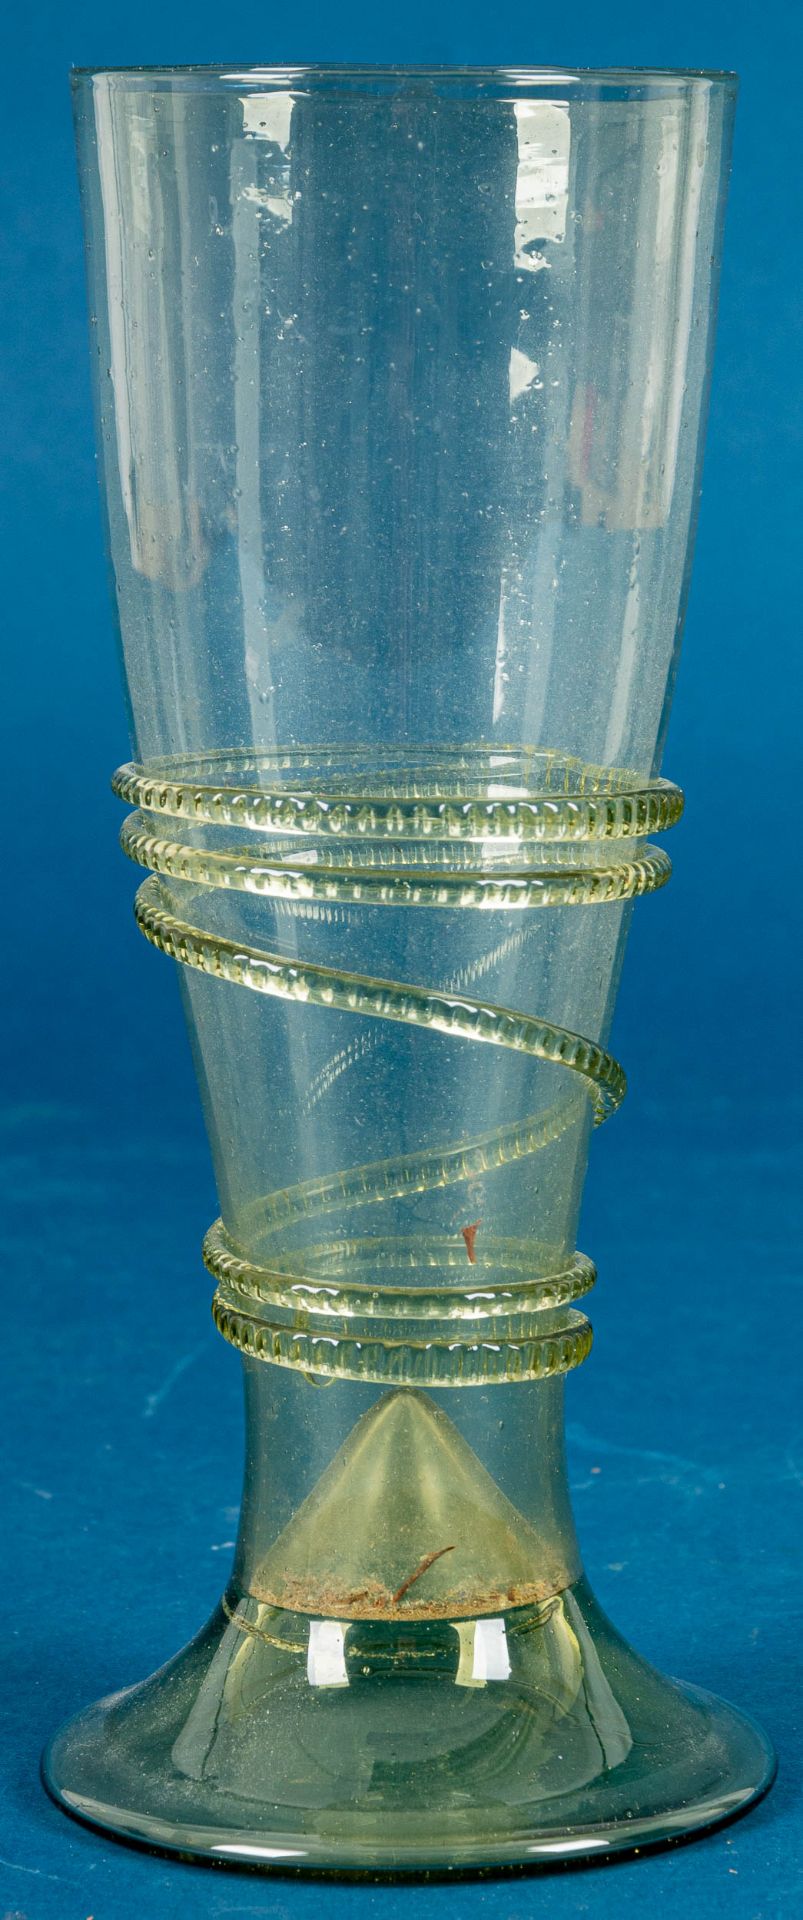 Großes antikes Trinkglas, grünliches Glas mit unzähligen Luftblaseneinschlüssen; mehrteilige Fertig - Bild 2 aus 6